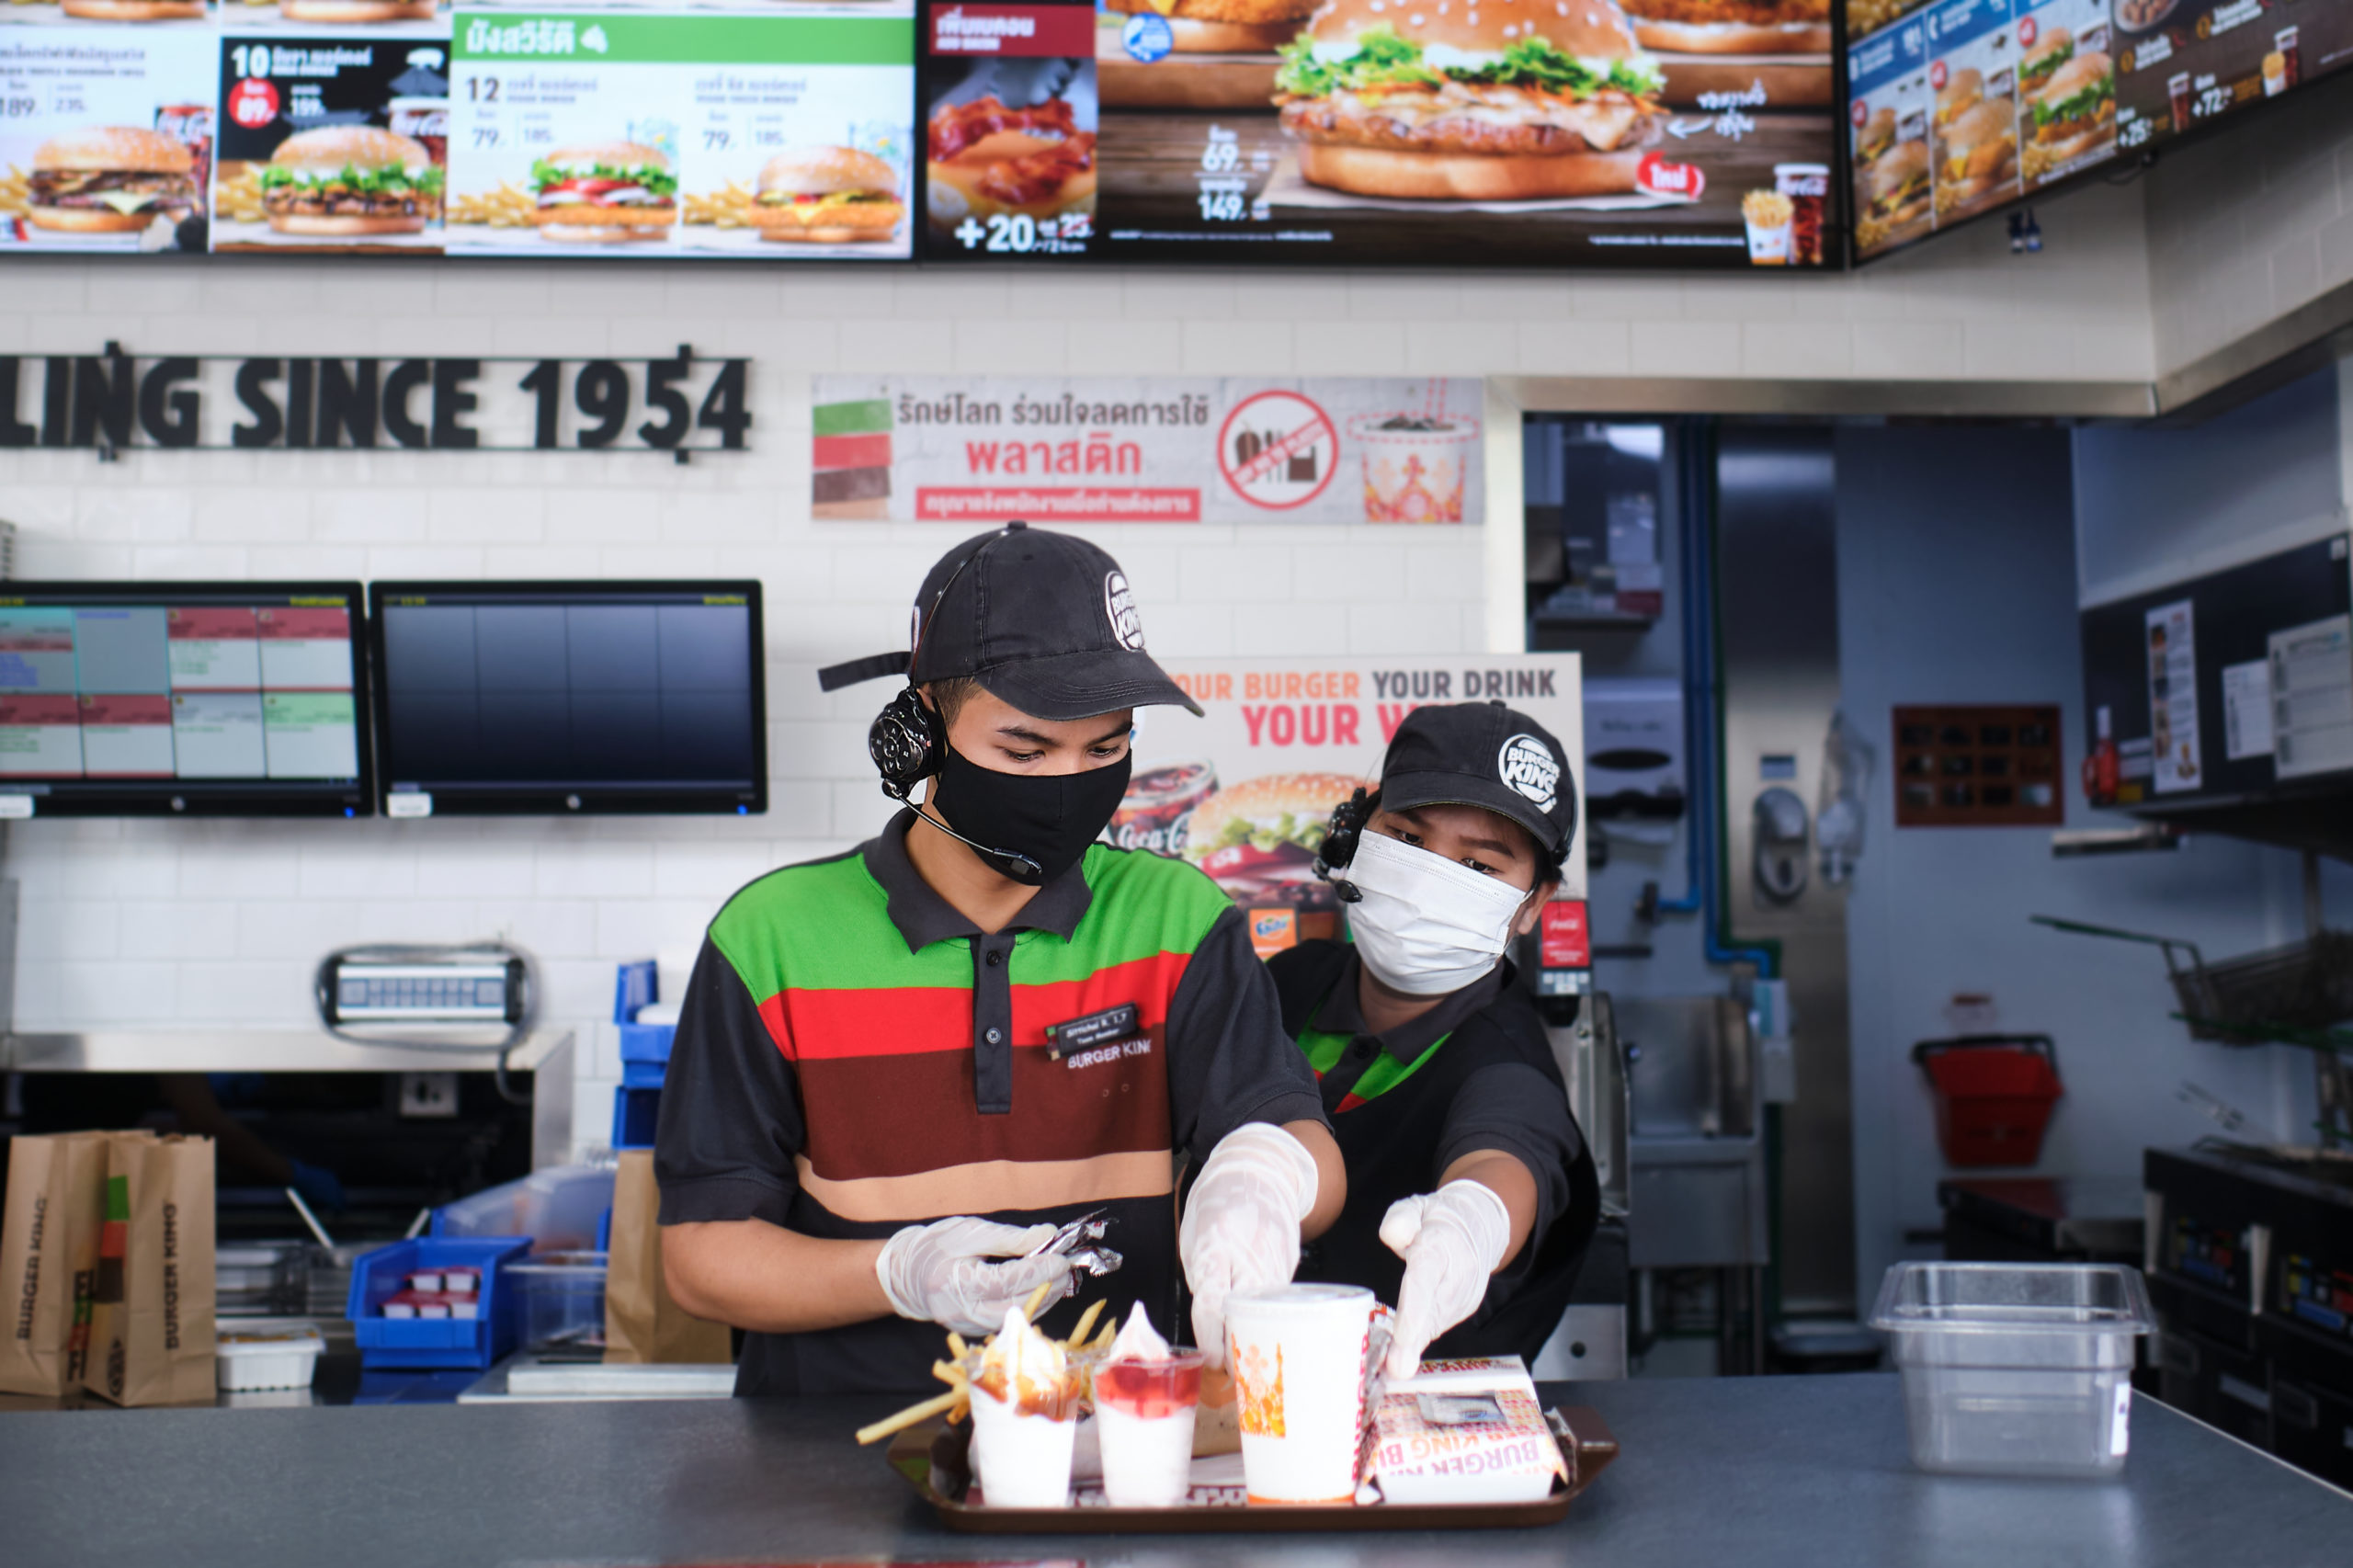 Burger King Trabalhe Conosco: como enviar currículo para vagas